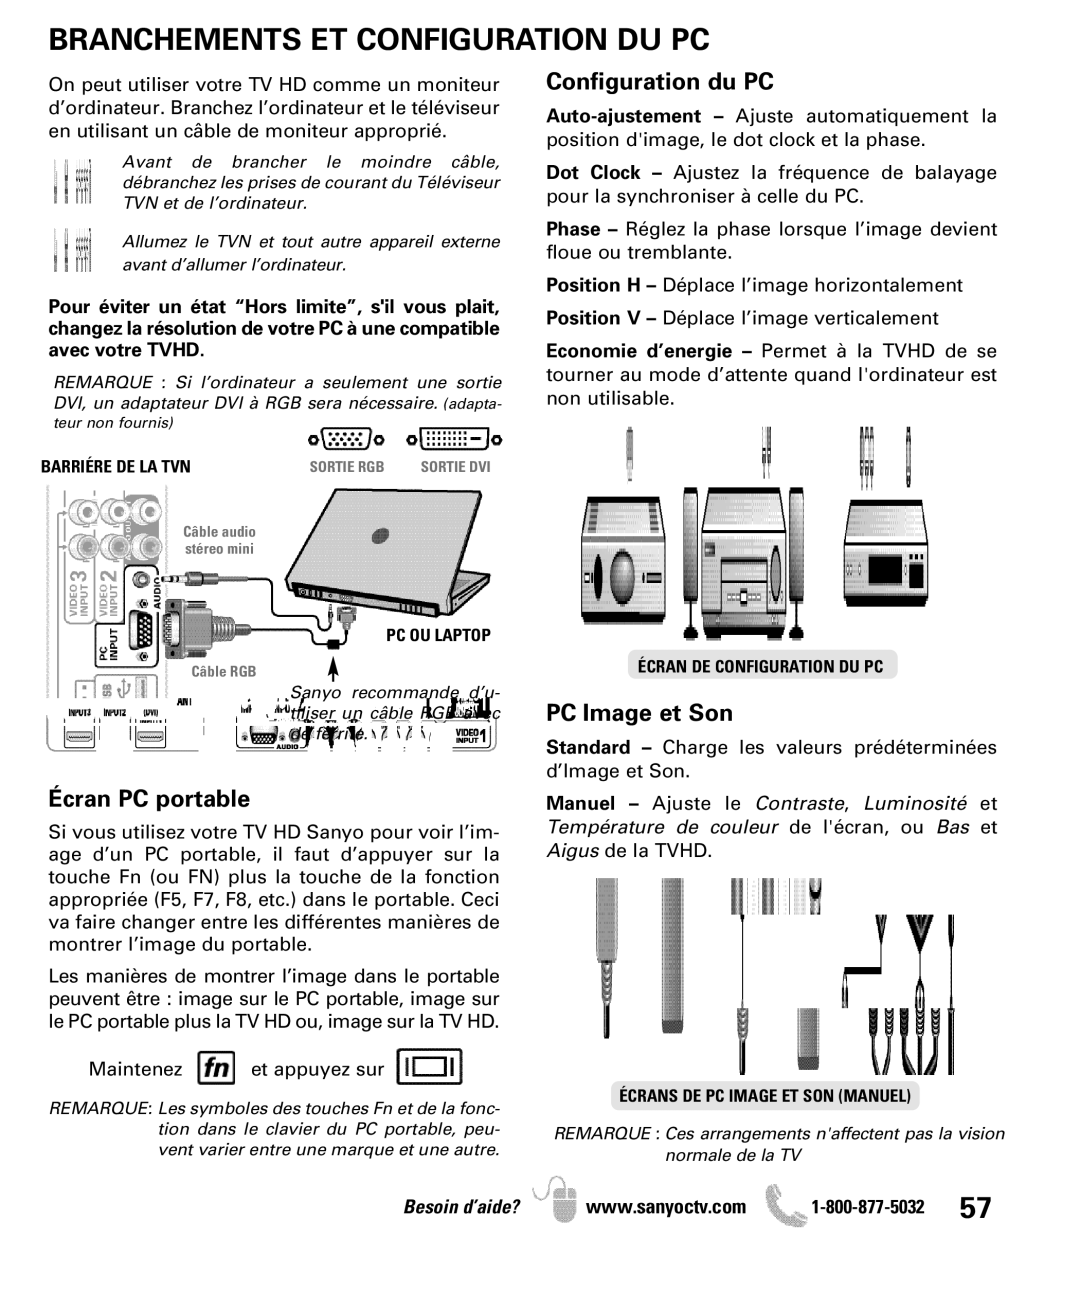 Sanyo DP50710 manual Branchements ET Configuration DU PC, Configuration du PC 